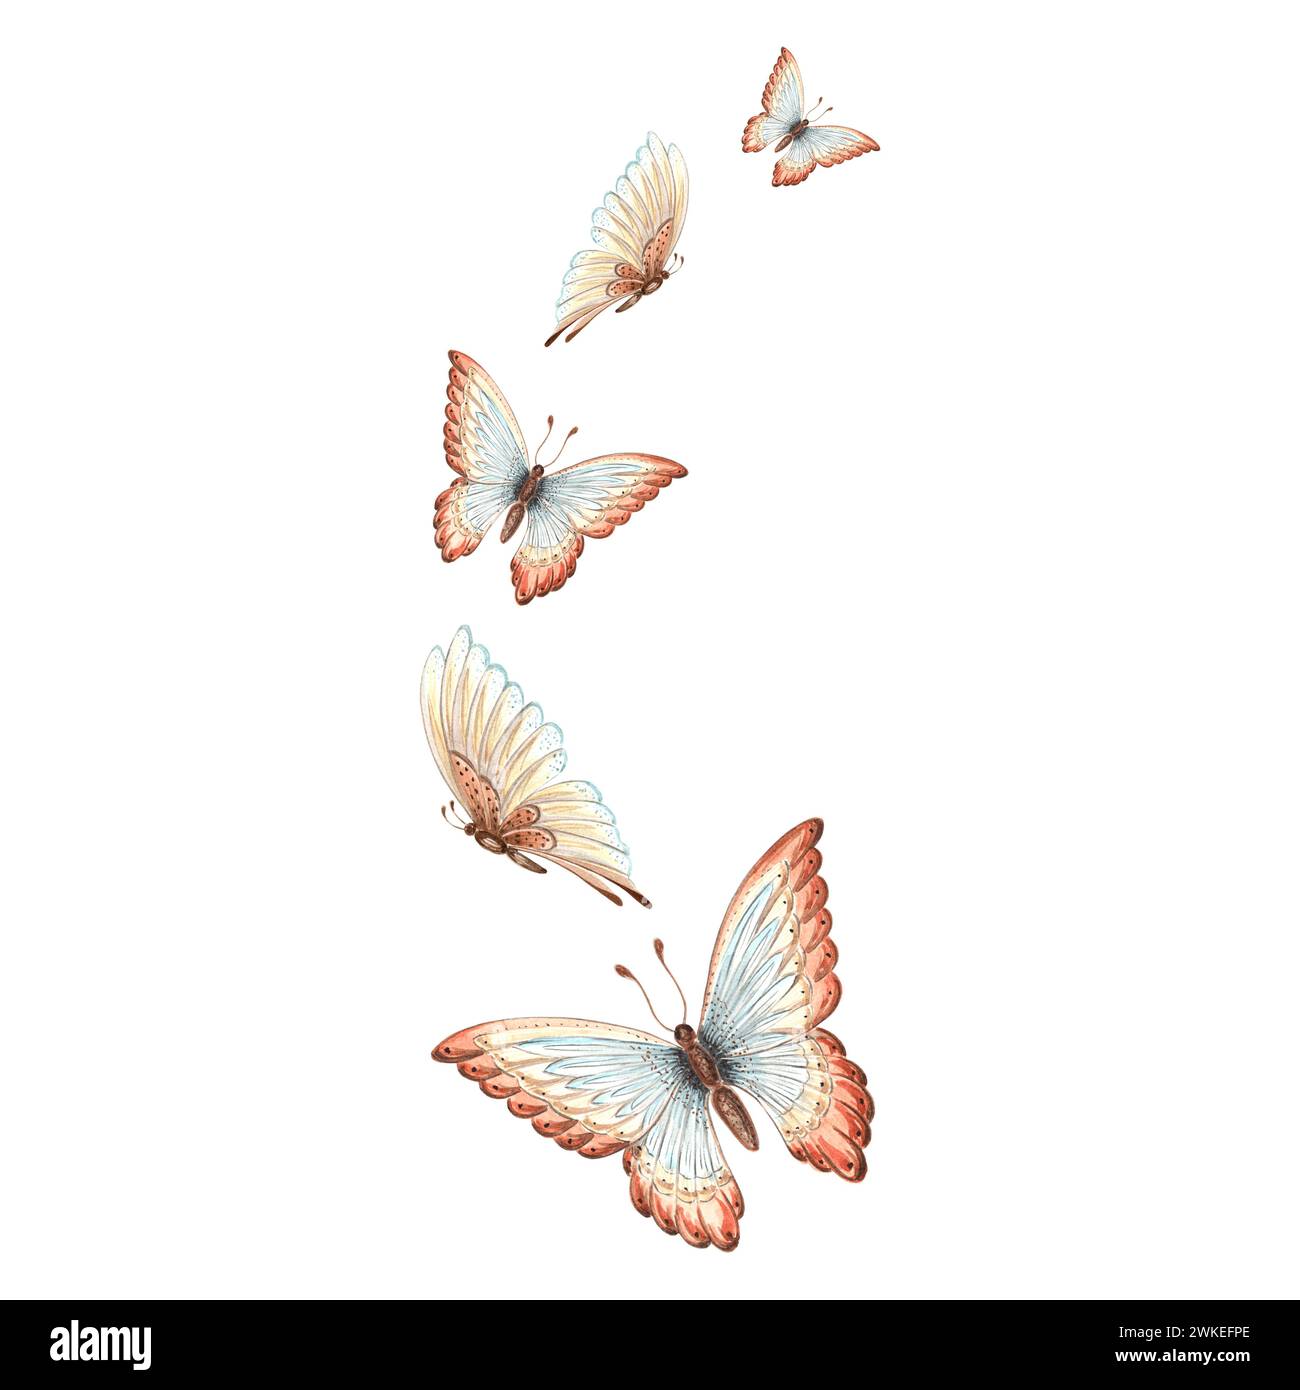 Aquarelle papillons volants délicate couleur bleu brun. Illustration isolée dessinée à la main printemps exotique d'insecte sauvage modèle dessin pour carte, packagi Banque D'Images